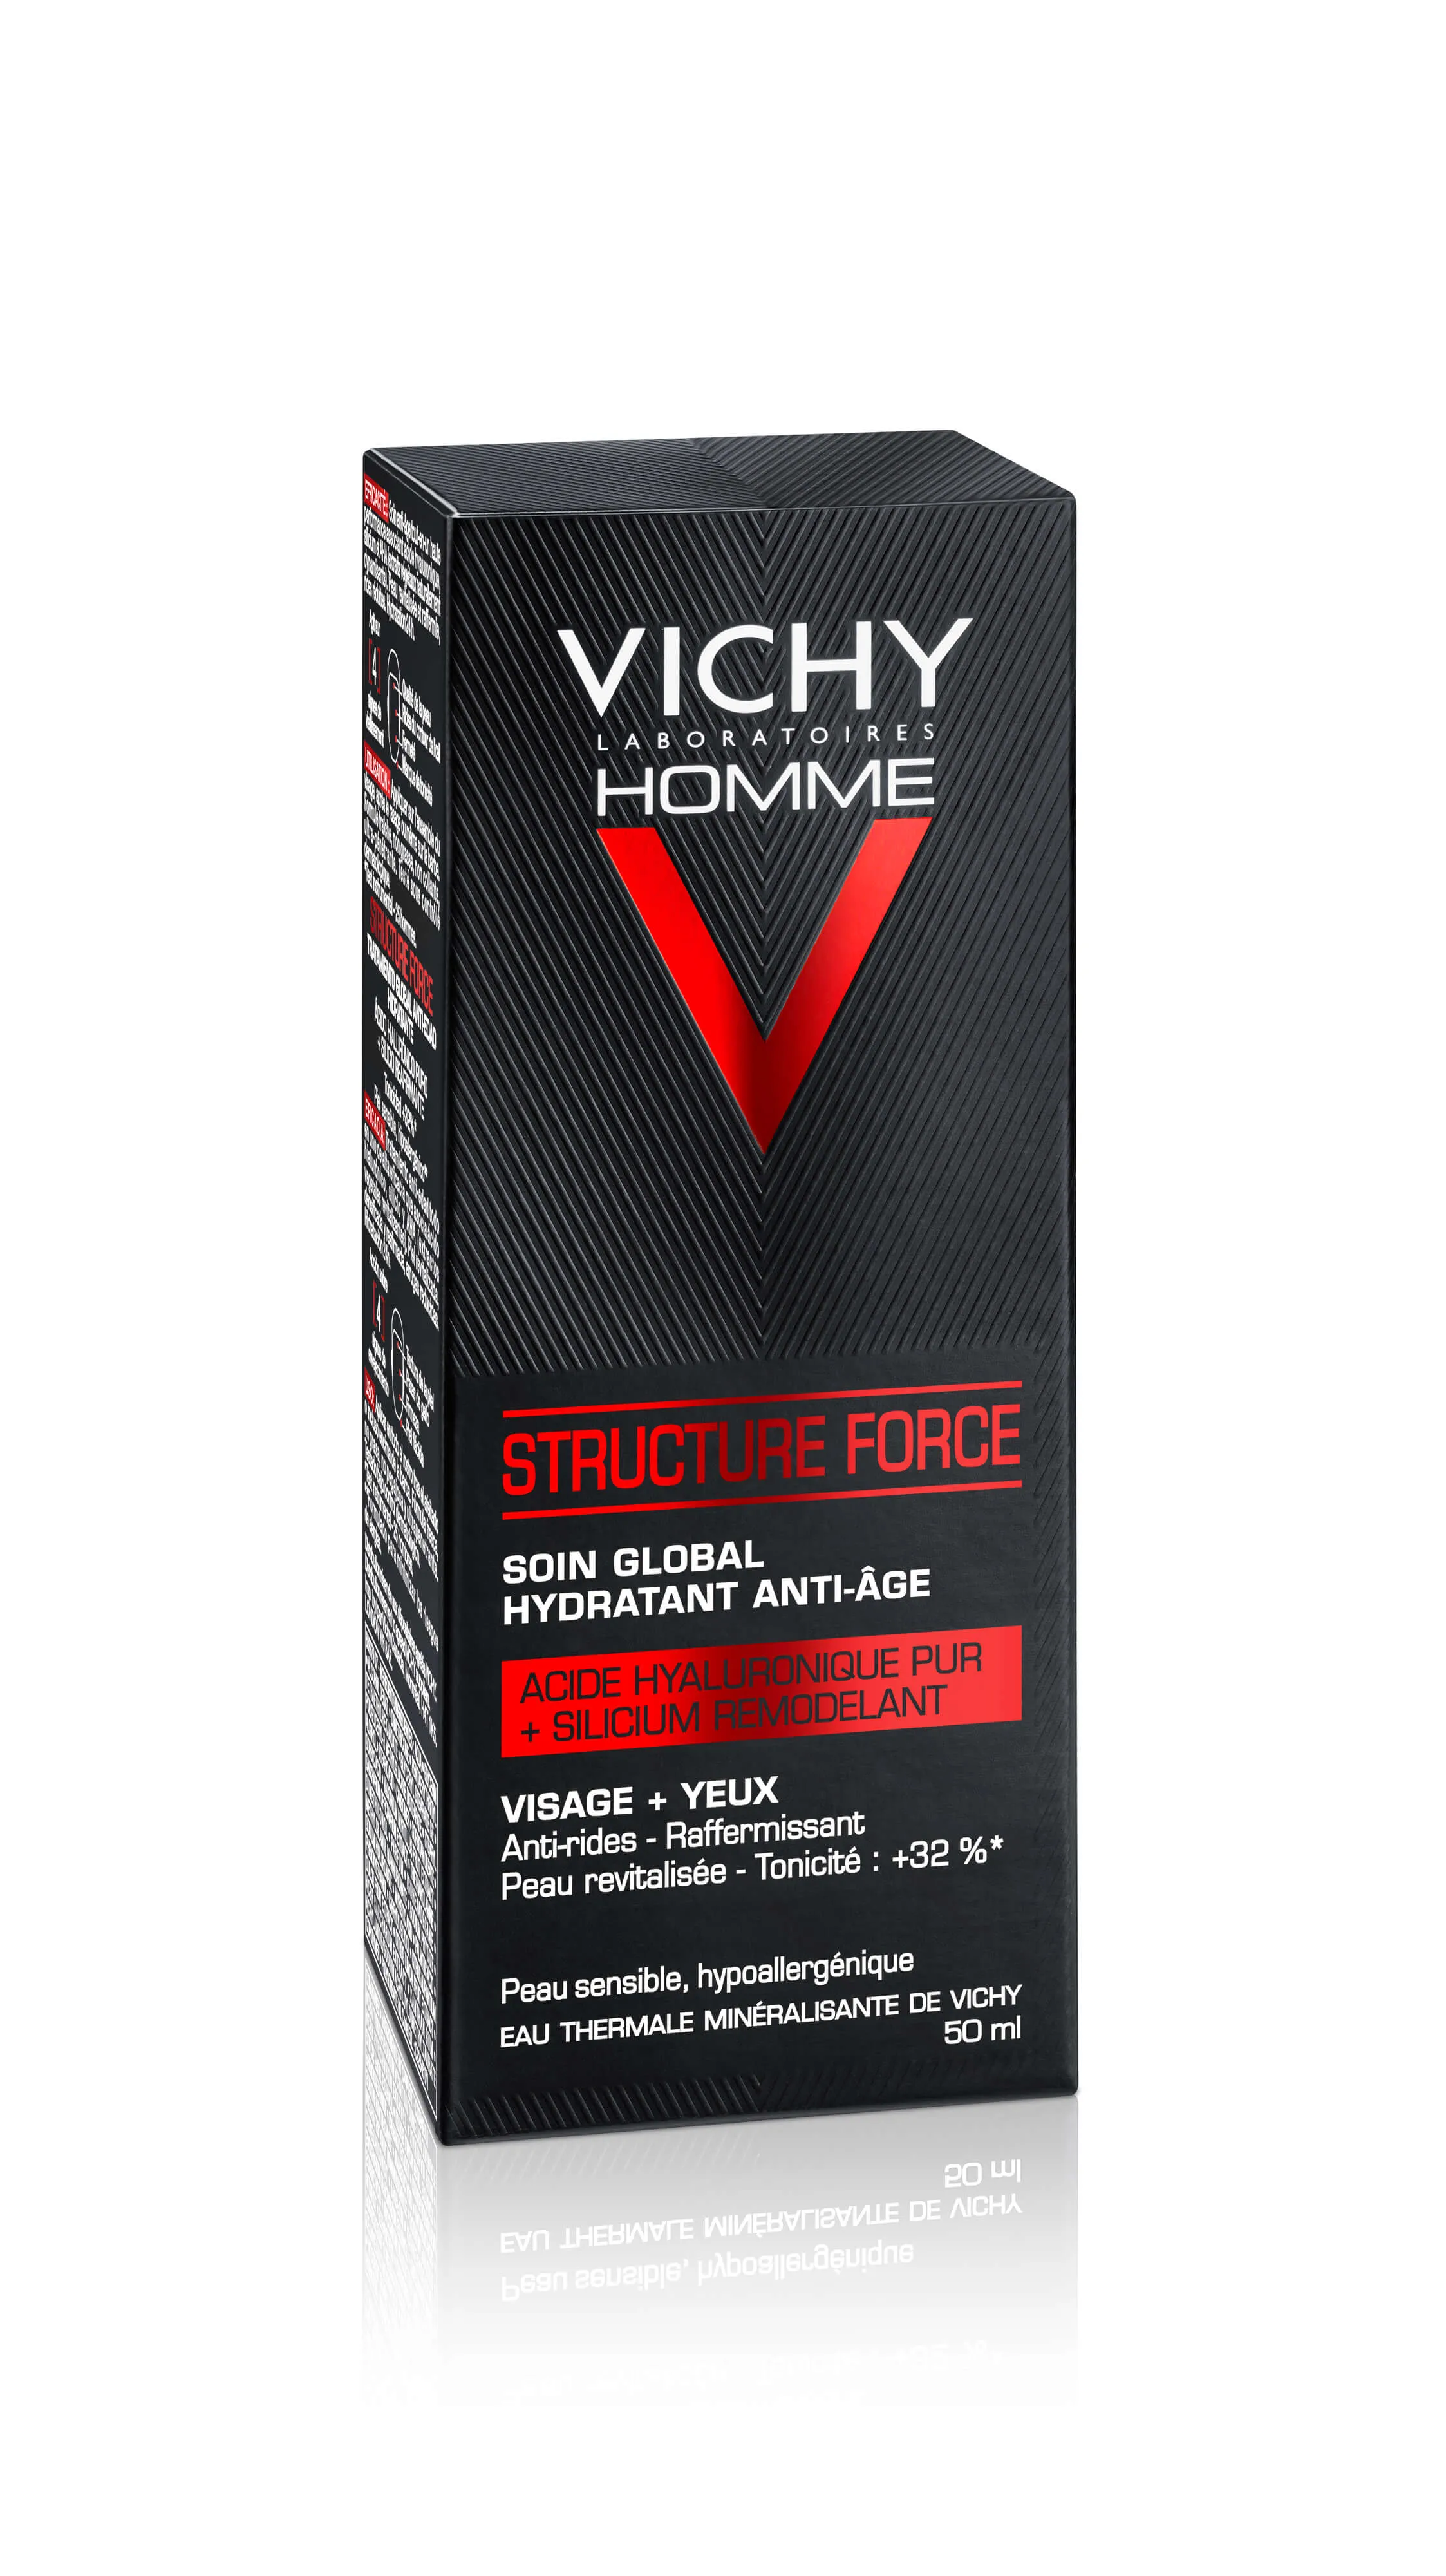 Vichy Homme Structure Force, przeciwzmarszczkowy krem wzmacniający, 50 ml